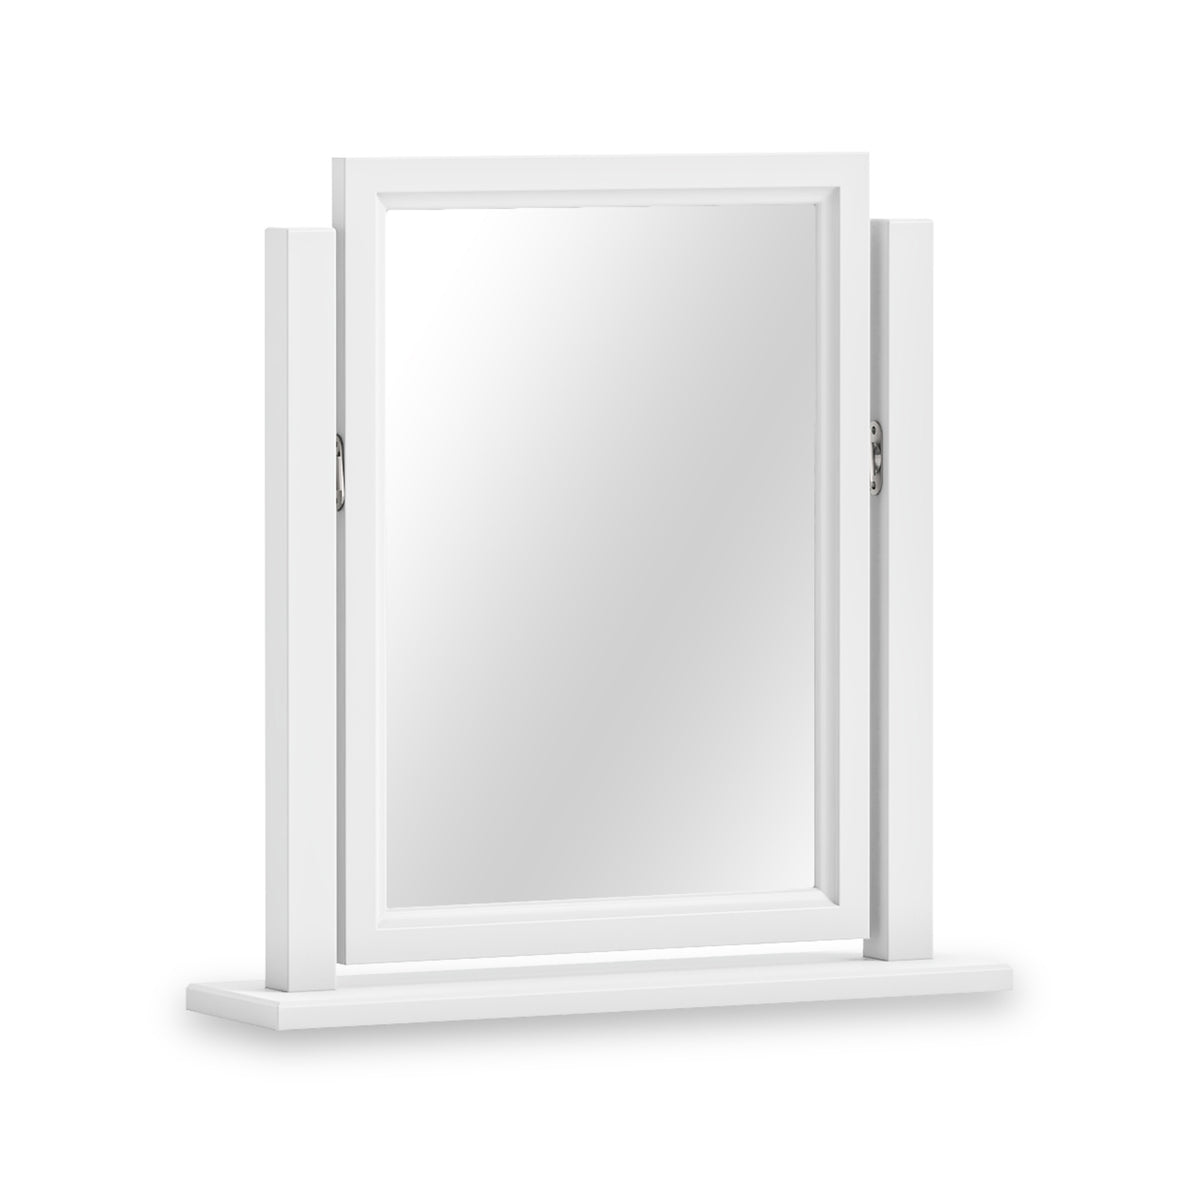 Porter Tilting White Vanity Mirror from Roseland Furniture